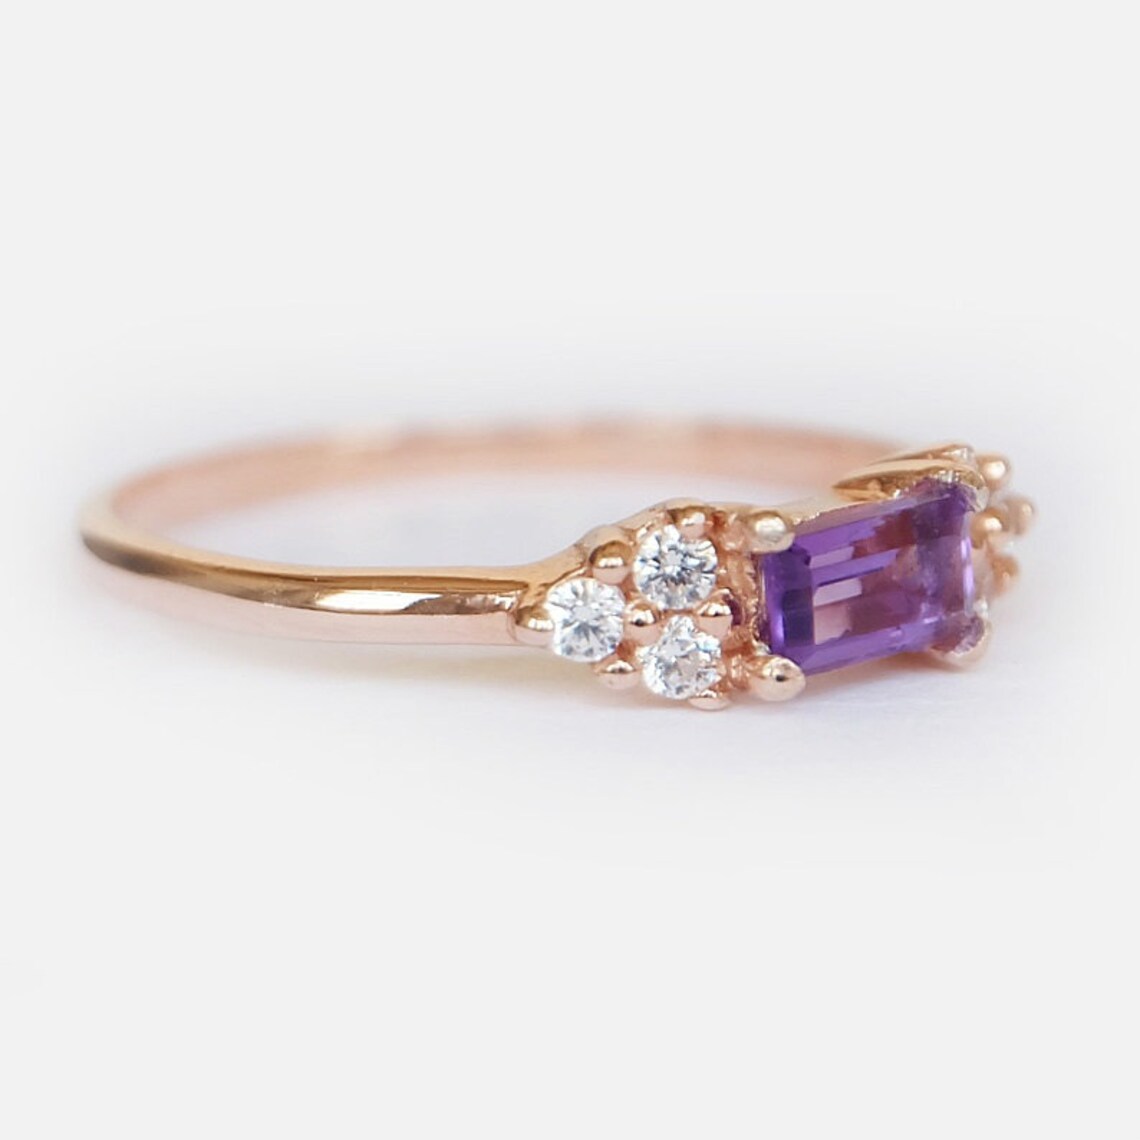 Amethyst Promise Ring - 14k Rose Gold Vermeil Ring